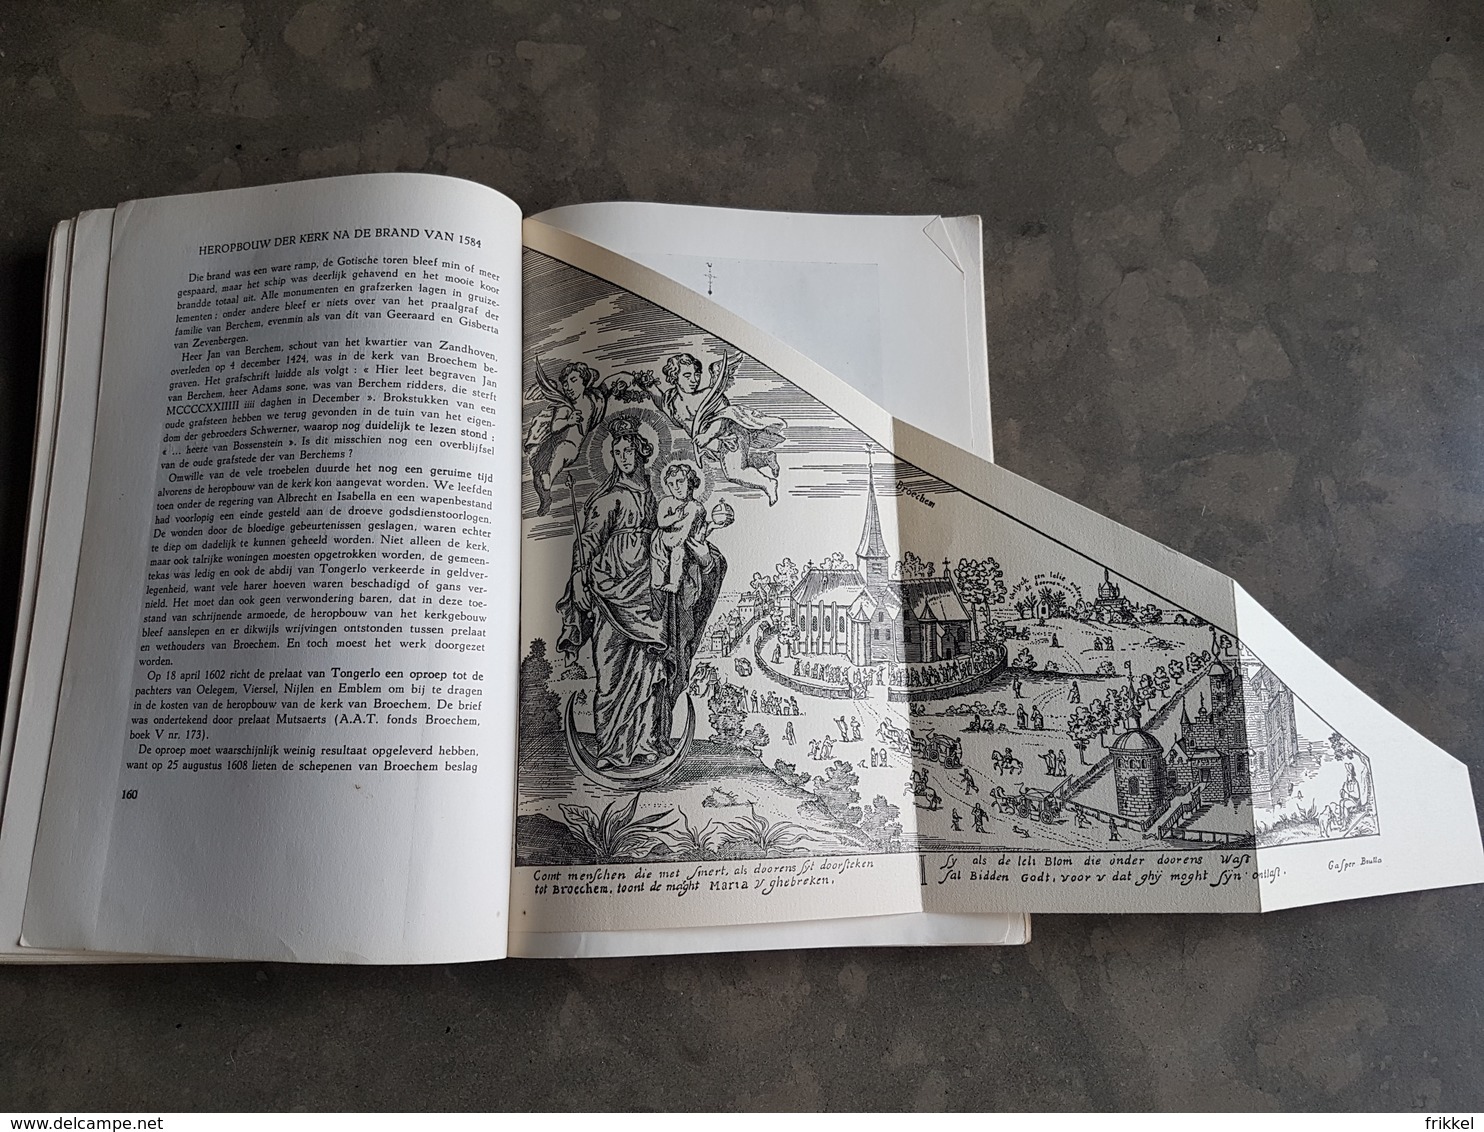 Boek: Bijdrage tot de Geschiedenis van Broechem 1963 A. De Belser (336 blz ; 16 x 24 cm) + enkel blz manuscript